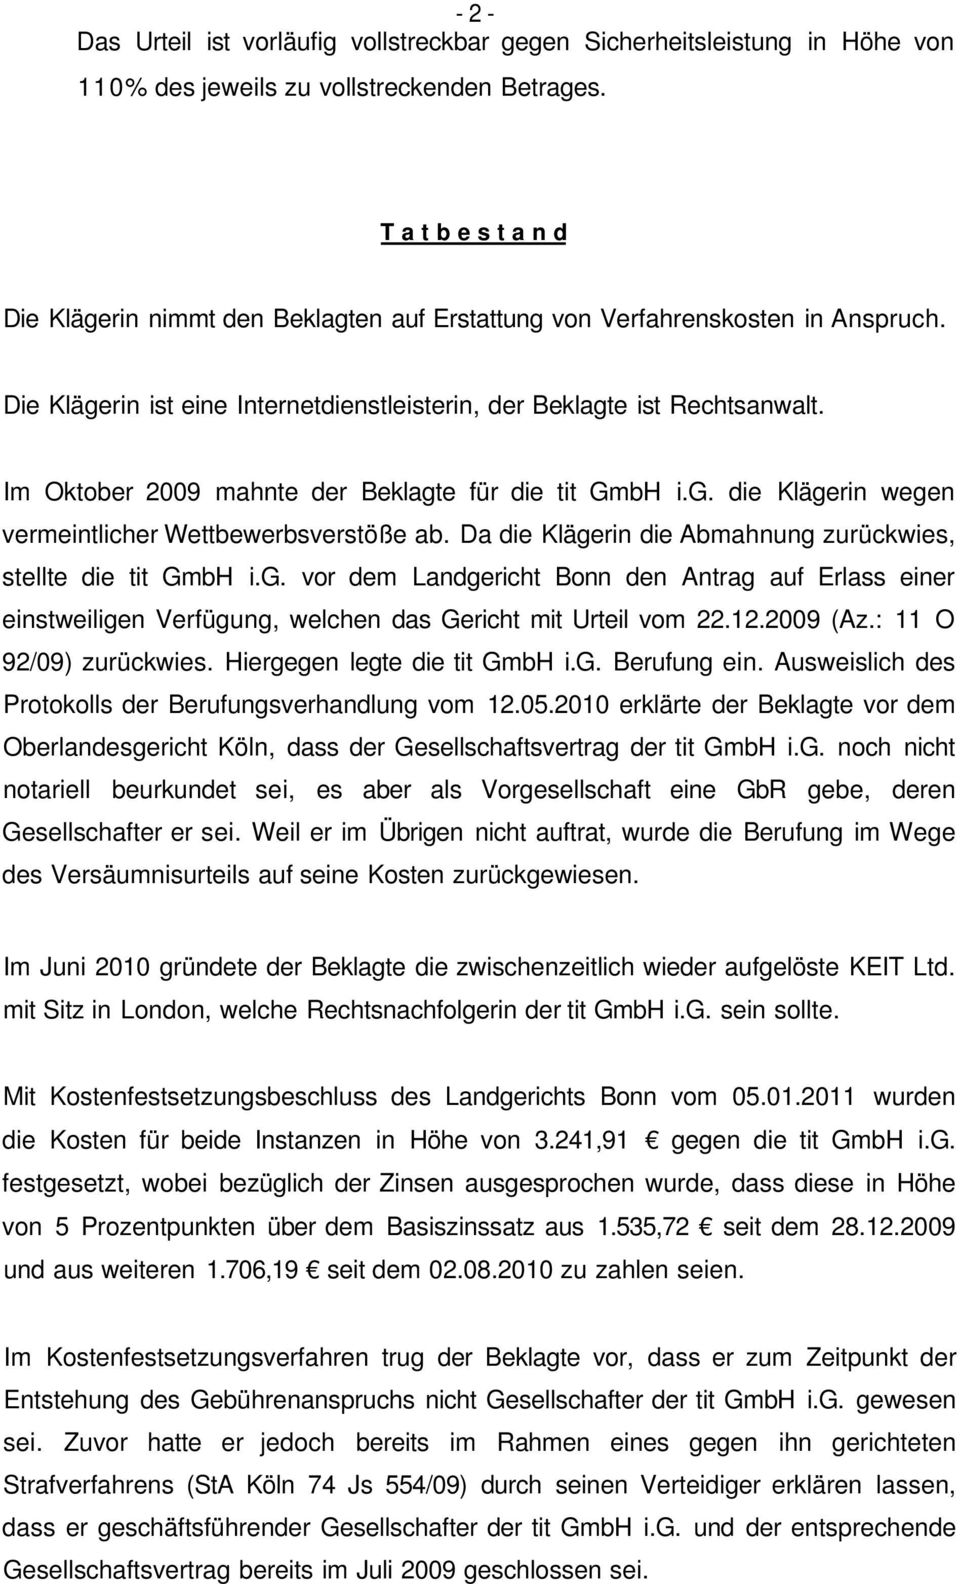 Im Oktober 2009 mahnte der Beklagte für die tit GmbH i.g. die Klägerin wegen vermeintlicher Wettbewerbsverstöße ab. Da die Klägerin die Abmahnung zurückwies, stellte die tit GmbH i.g. vor dem Landgericht Bonn den Antrag auf Erlass einer einstweiligen Verfügung, welchen das Gericht mit Urteil vom 22.